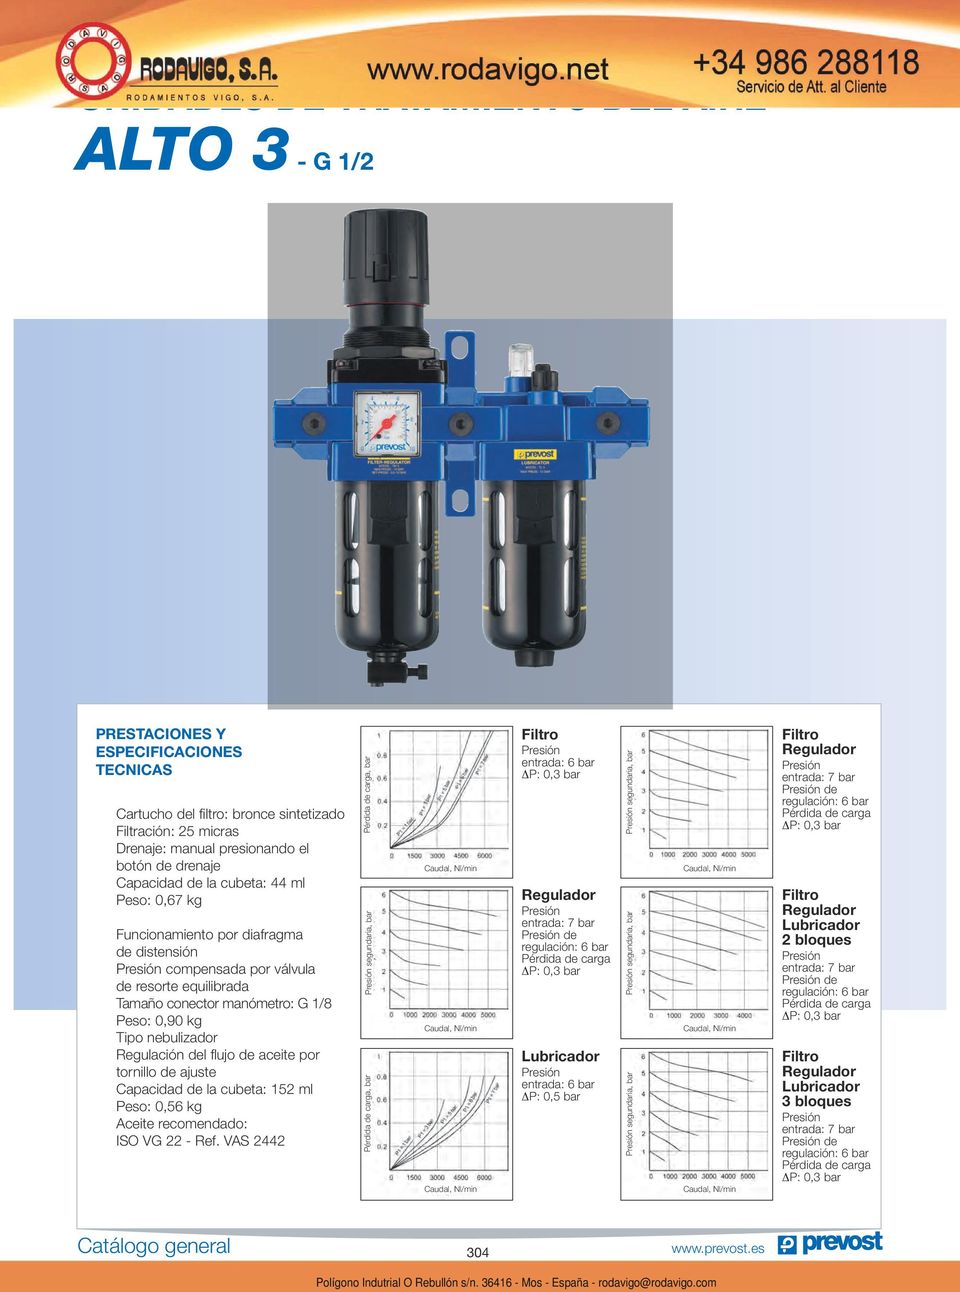 Regulación del flujo de aceite por tornillo de ajuste Capacidad de la cubeta: 152 ml Peso: 0,56 kg Aceite recomendado: ISO VG 22 - Ref.